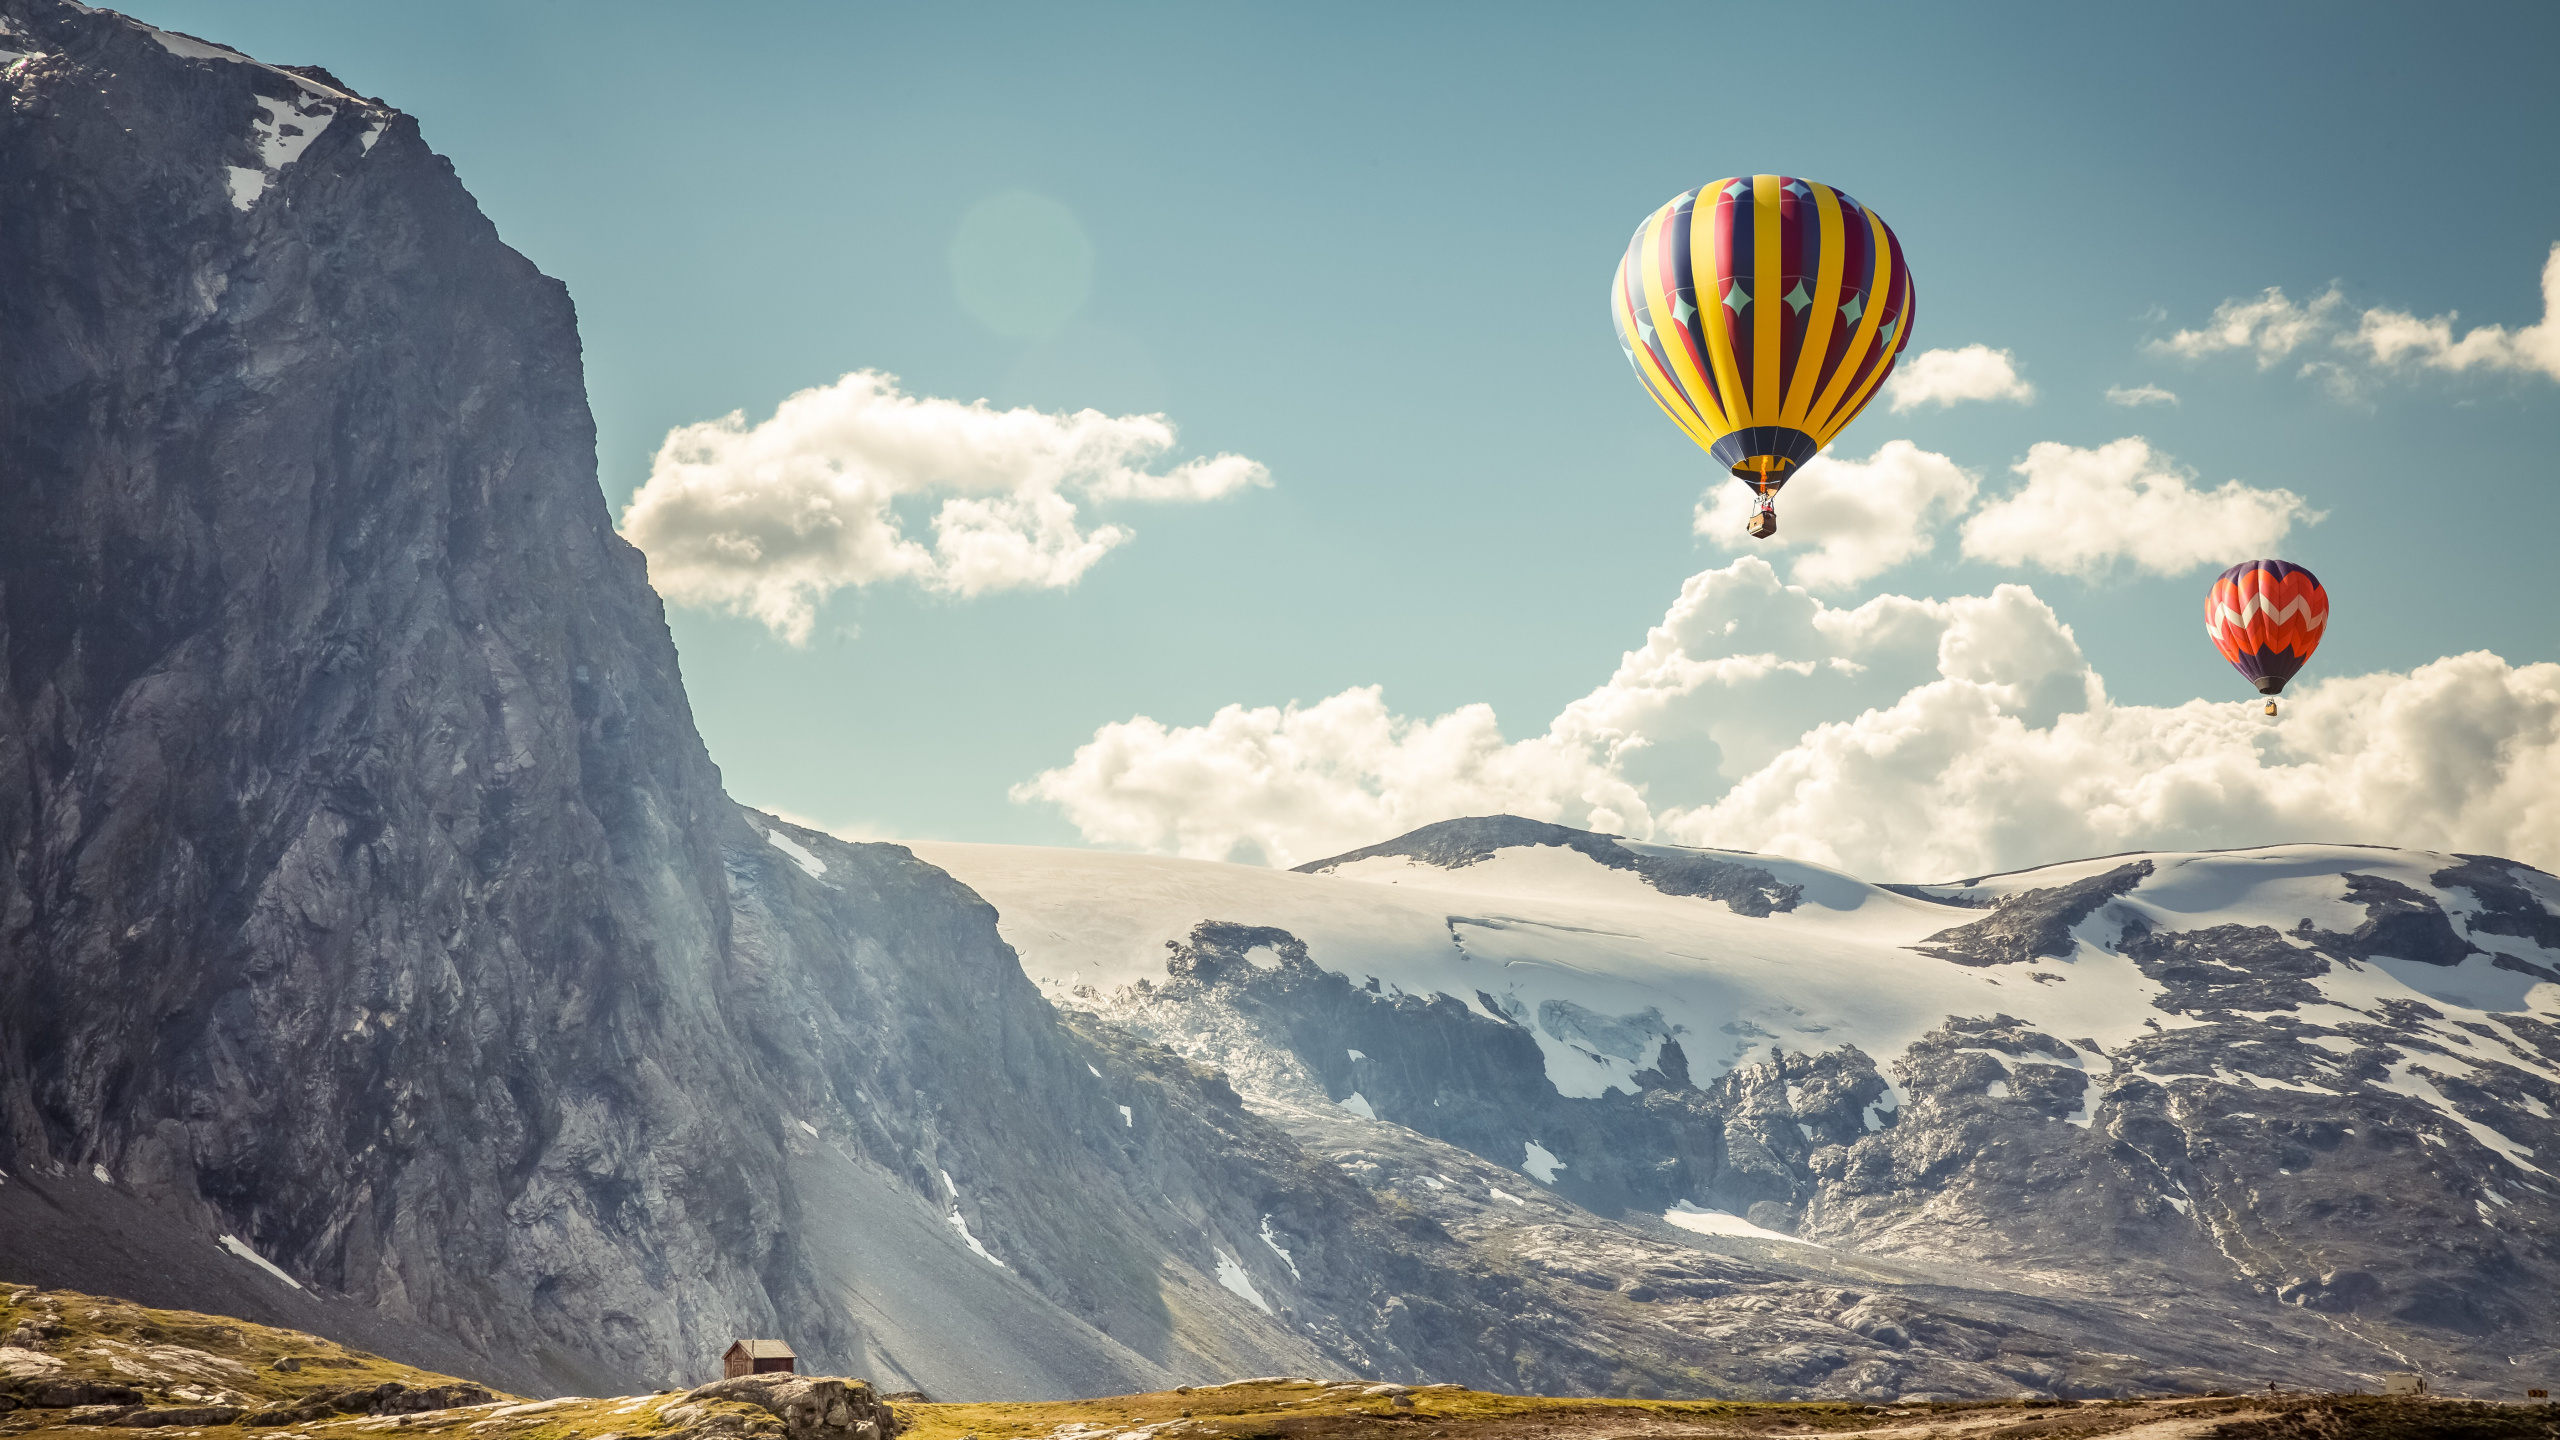 热气球, 山脉, 极限运动, 气囊, 旅游业 壁纸 2560x1440 允许